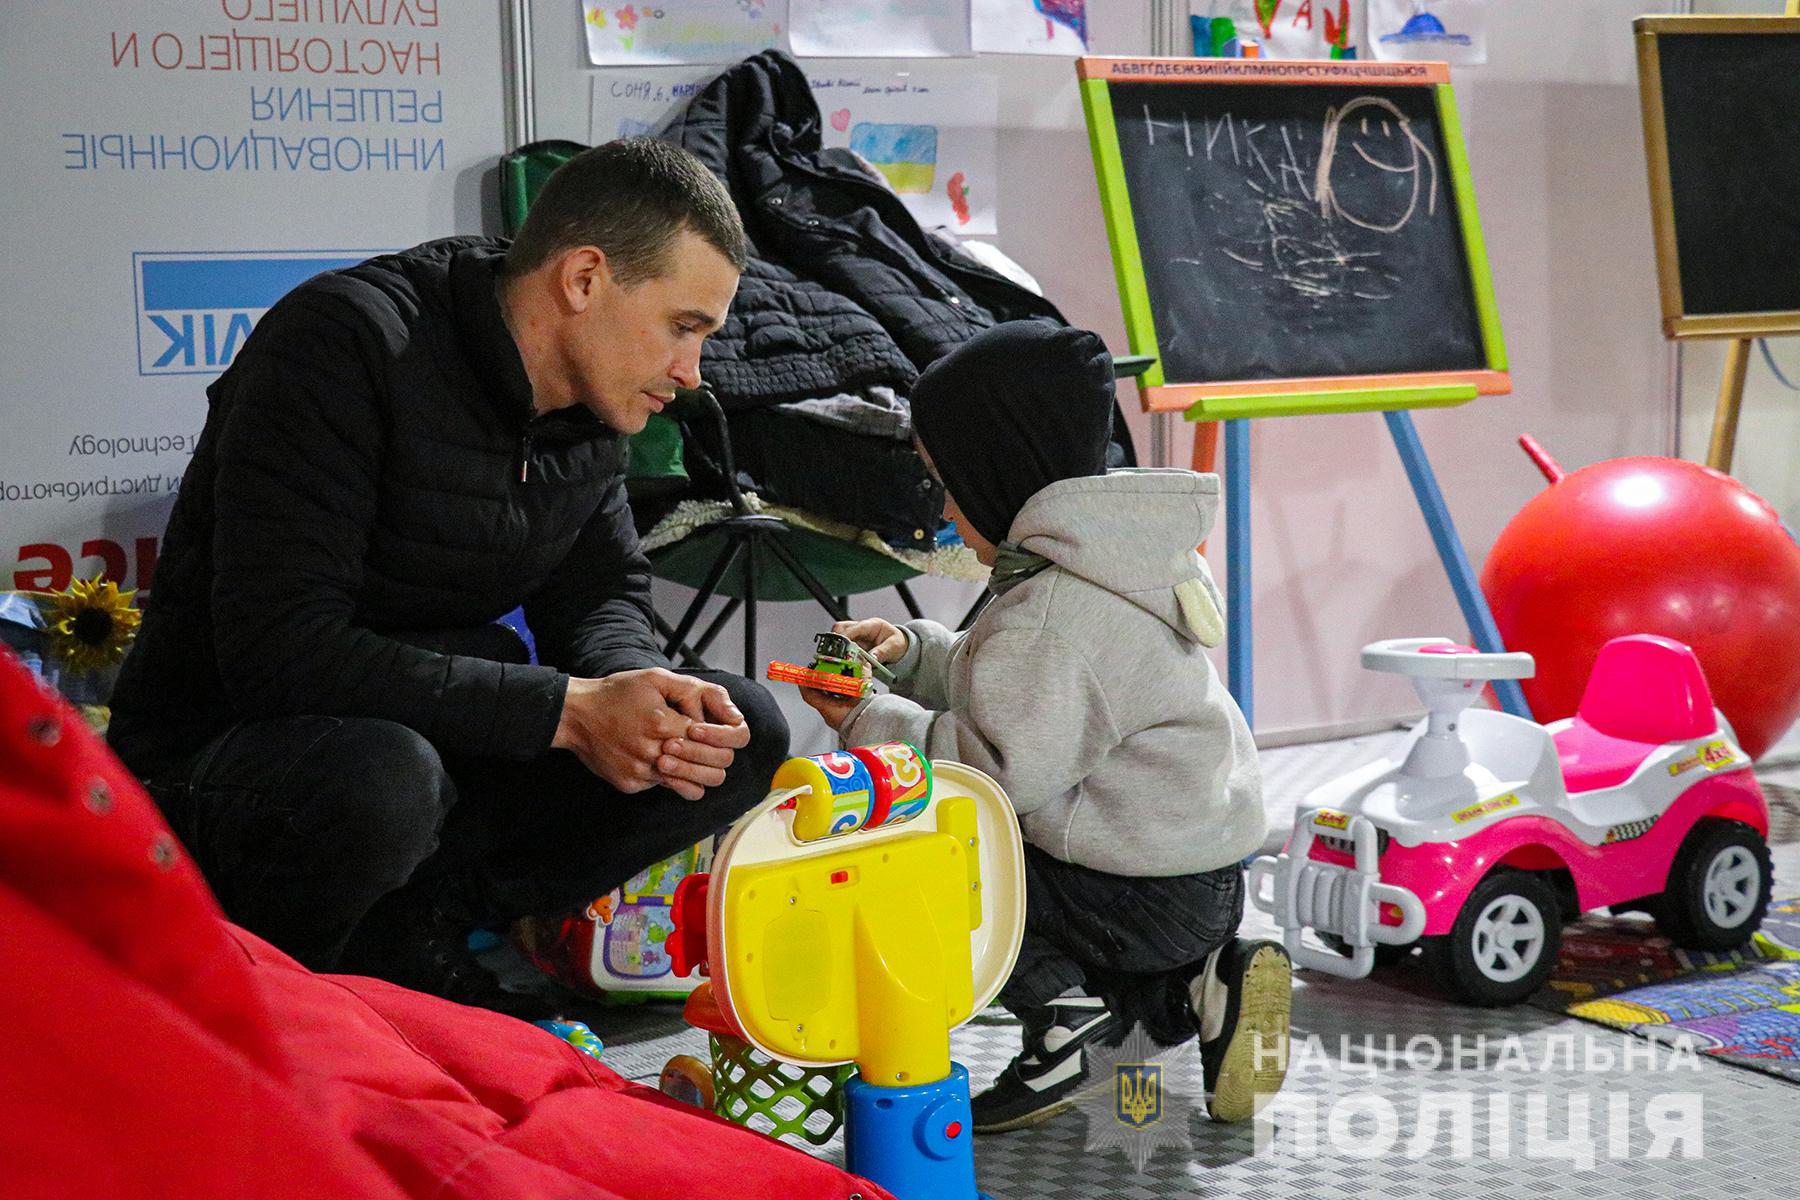 У Запоріжжі поліцейські забезпечили дітей гумдопомогою від колег із західних областей України (ФОТО)